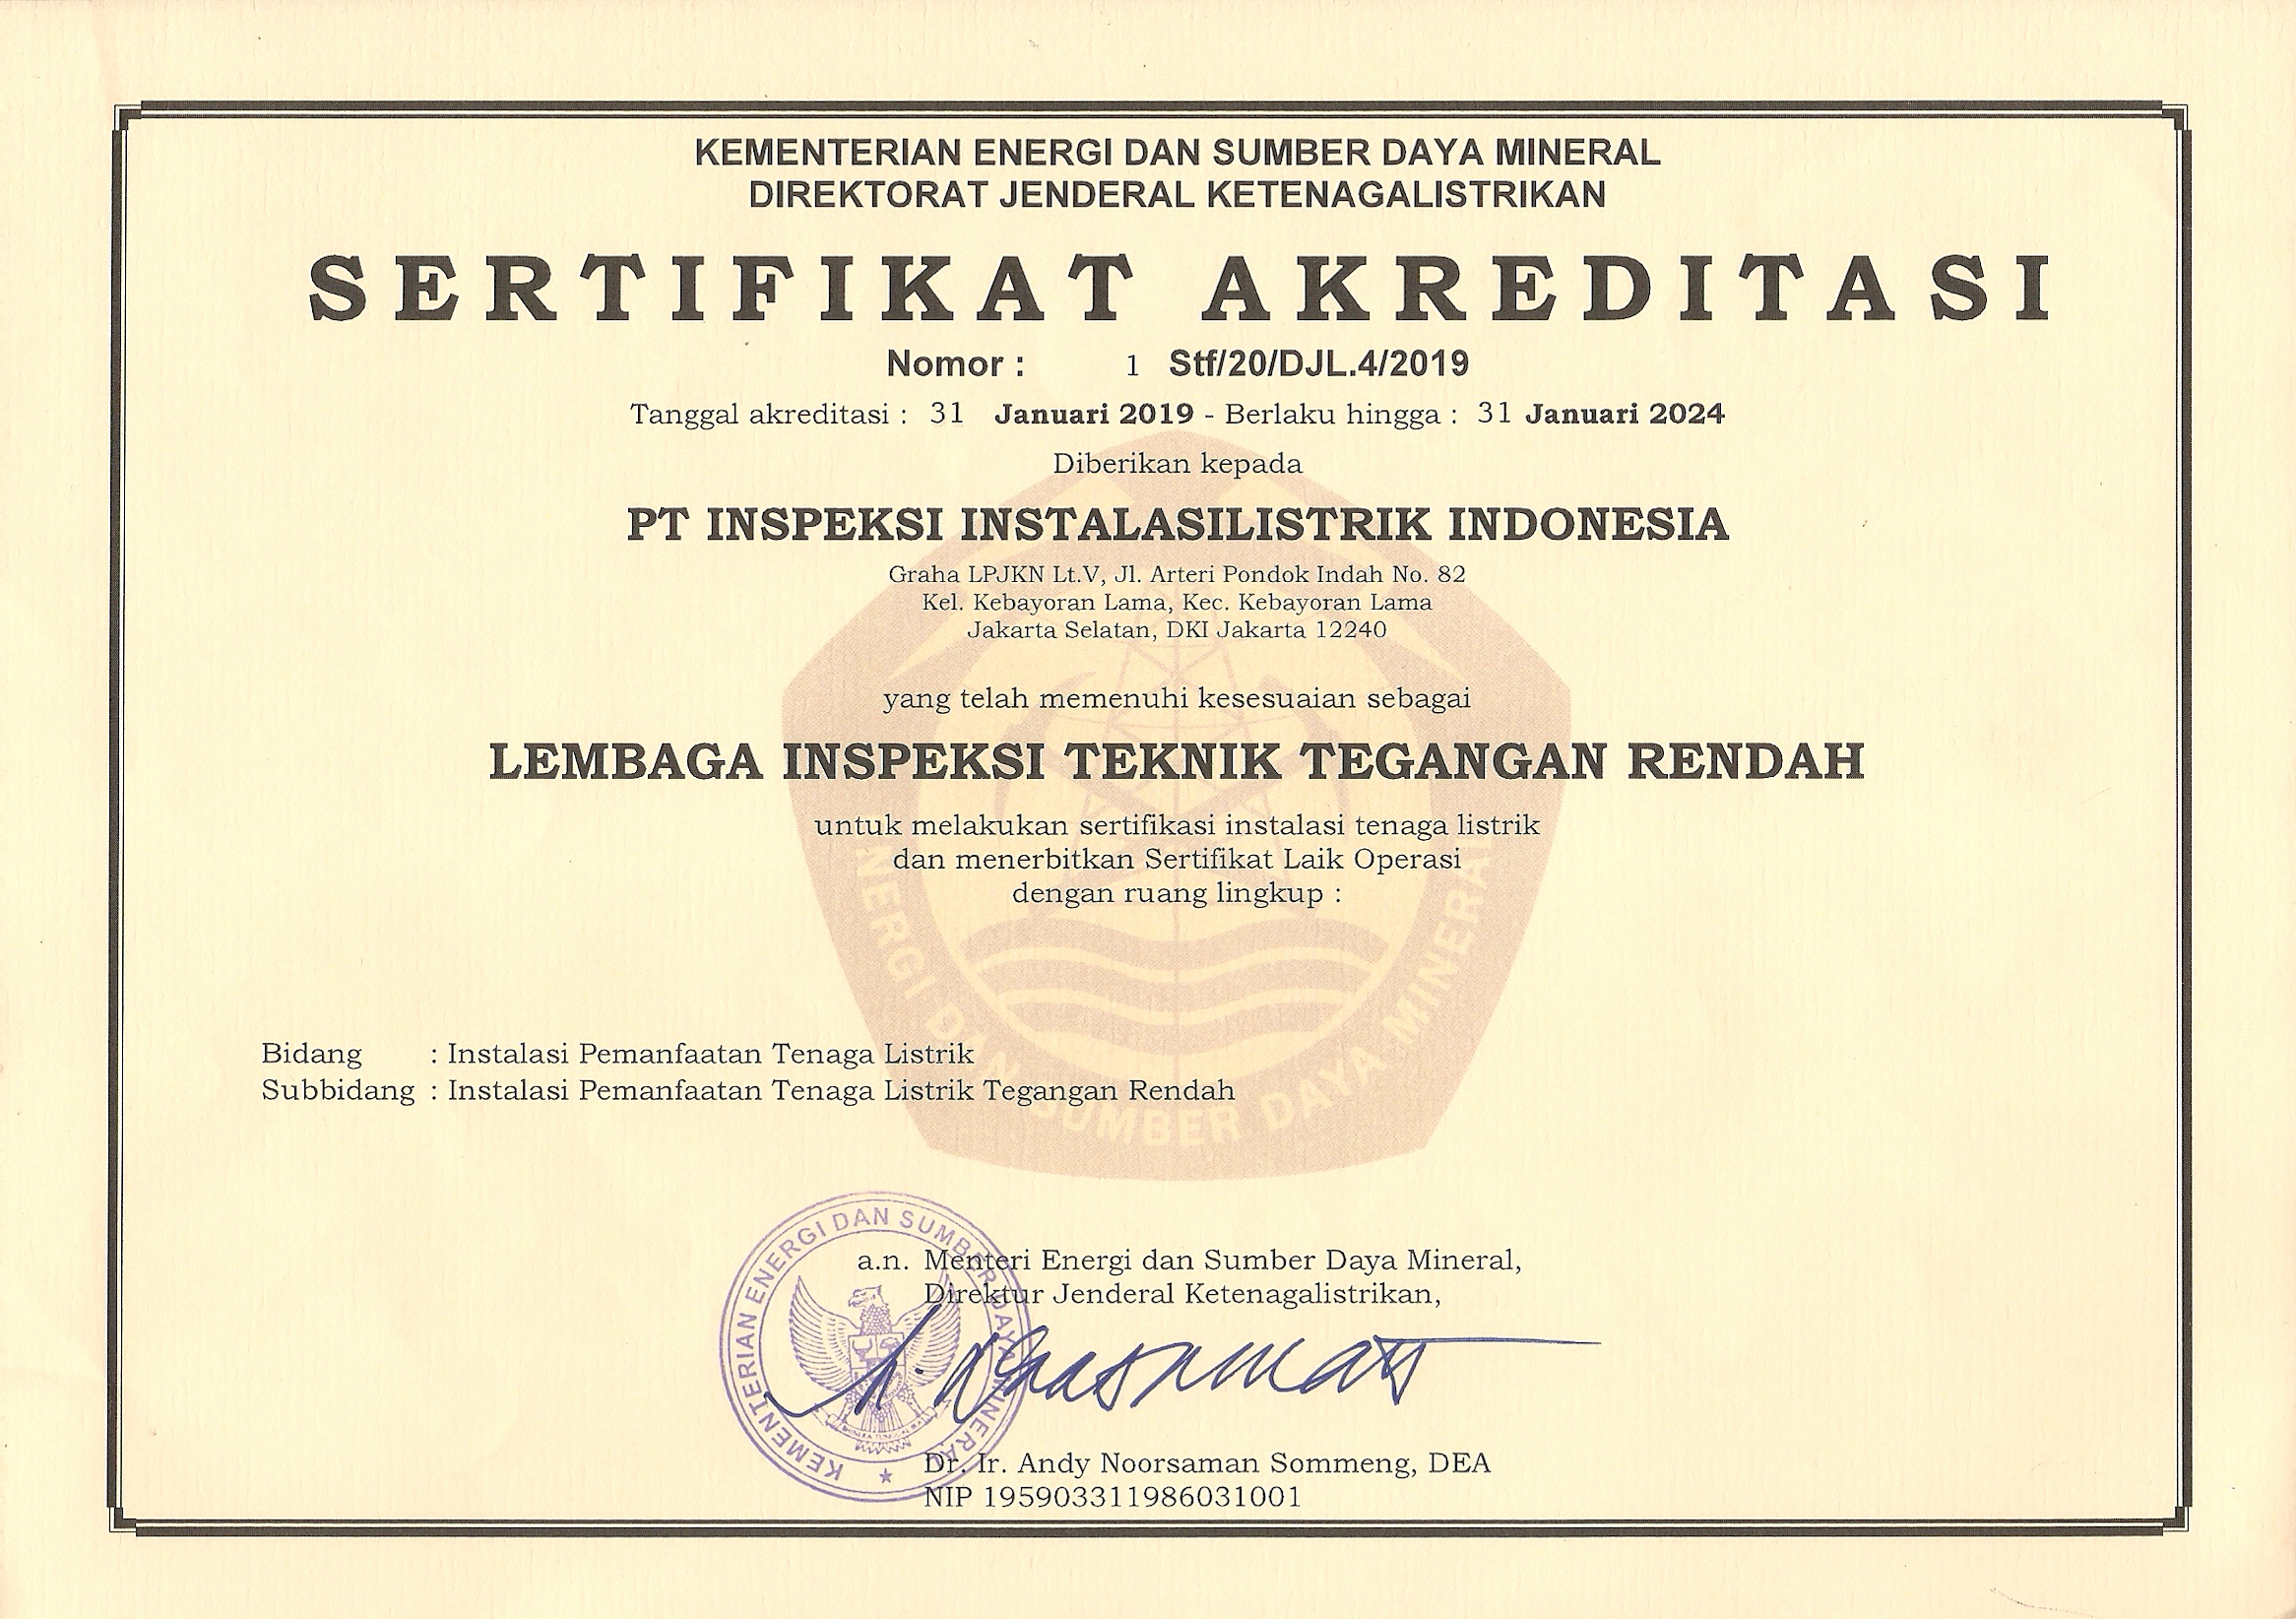 sertifikat akreditasi